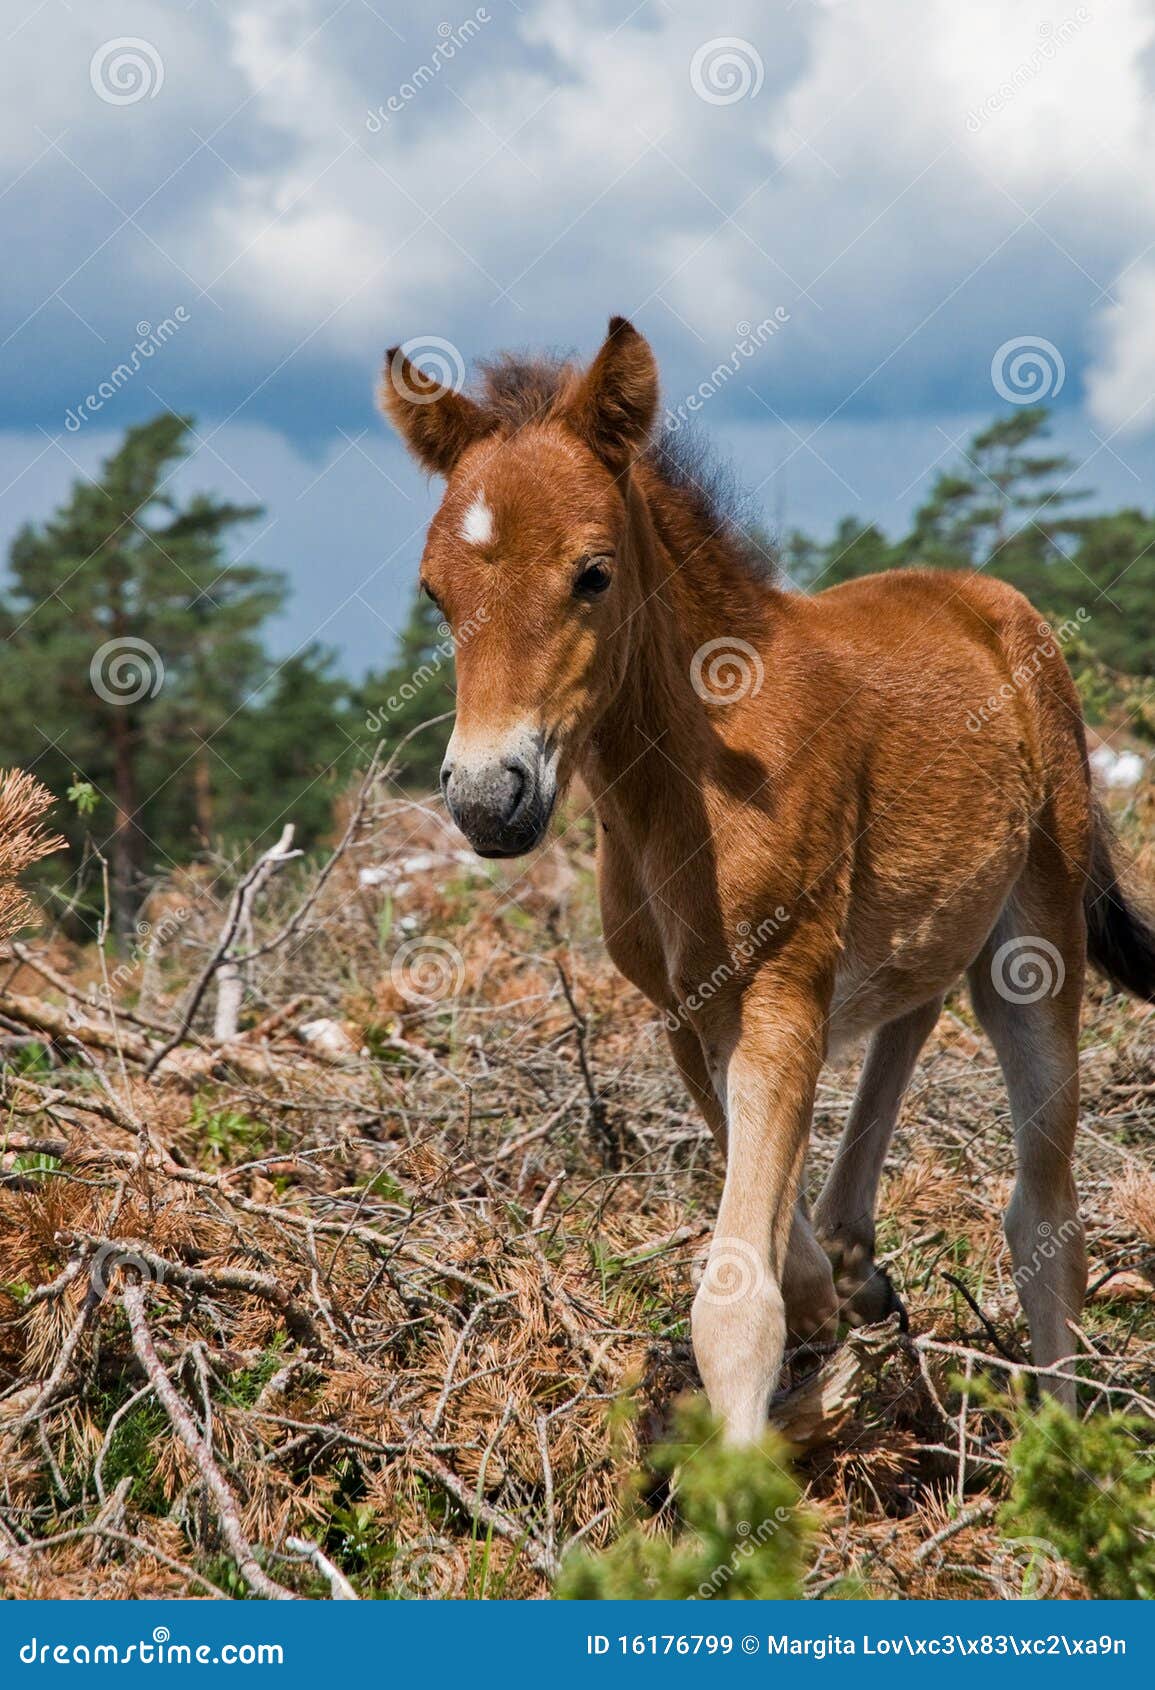 wildhorse-foal in lojsta hed, sweden